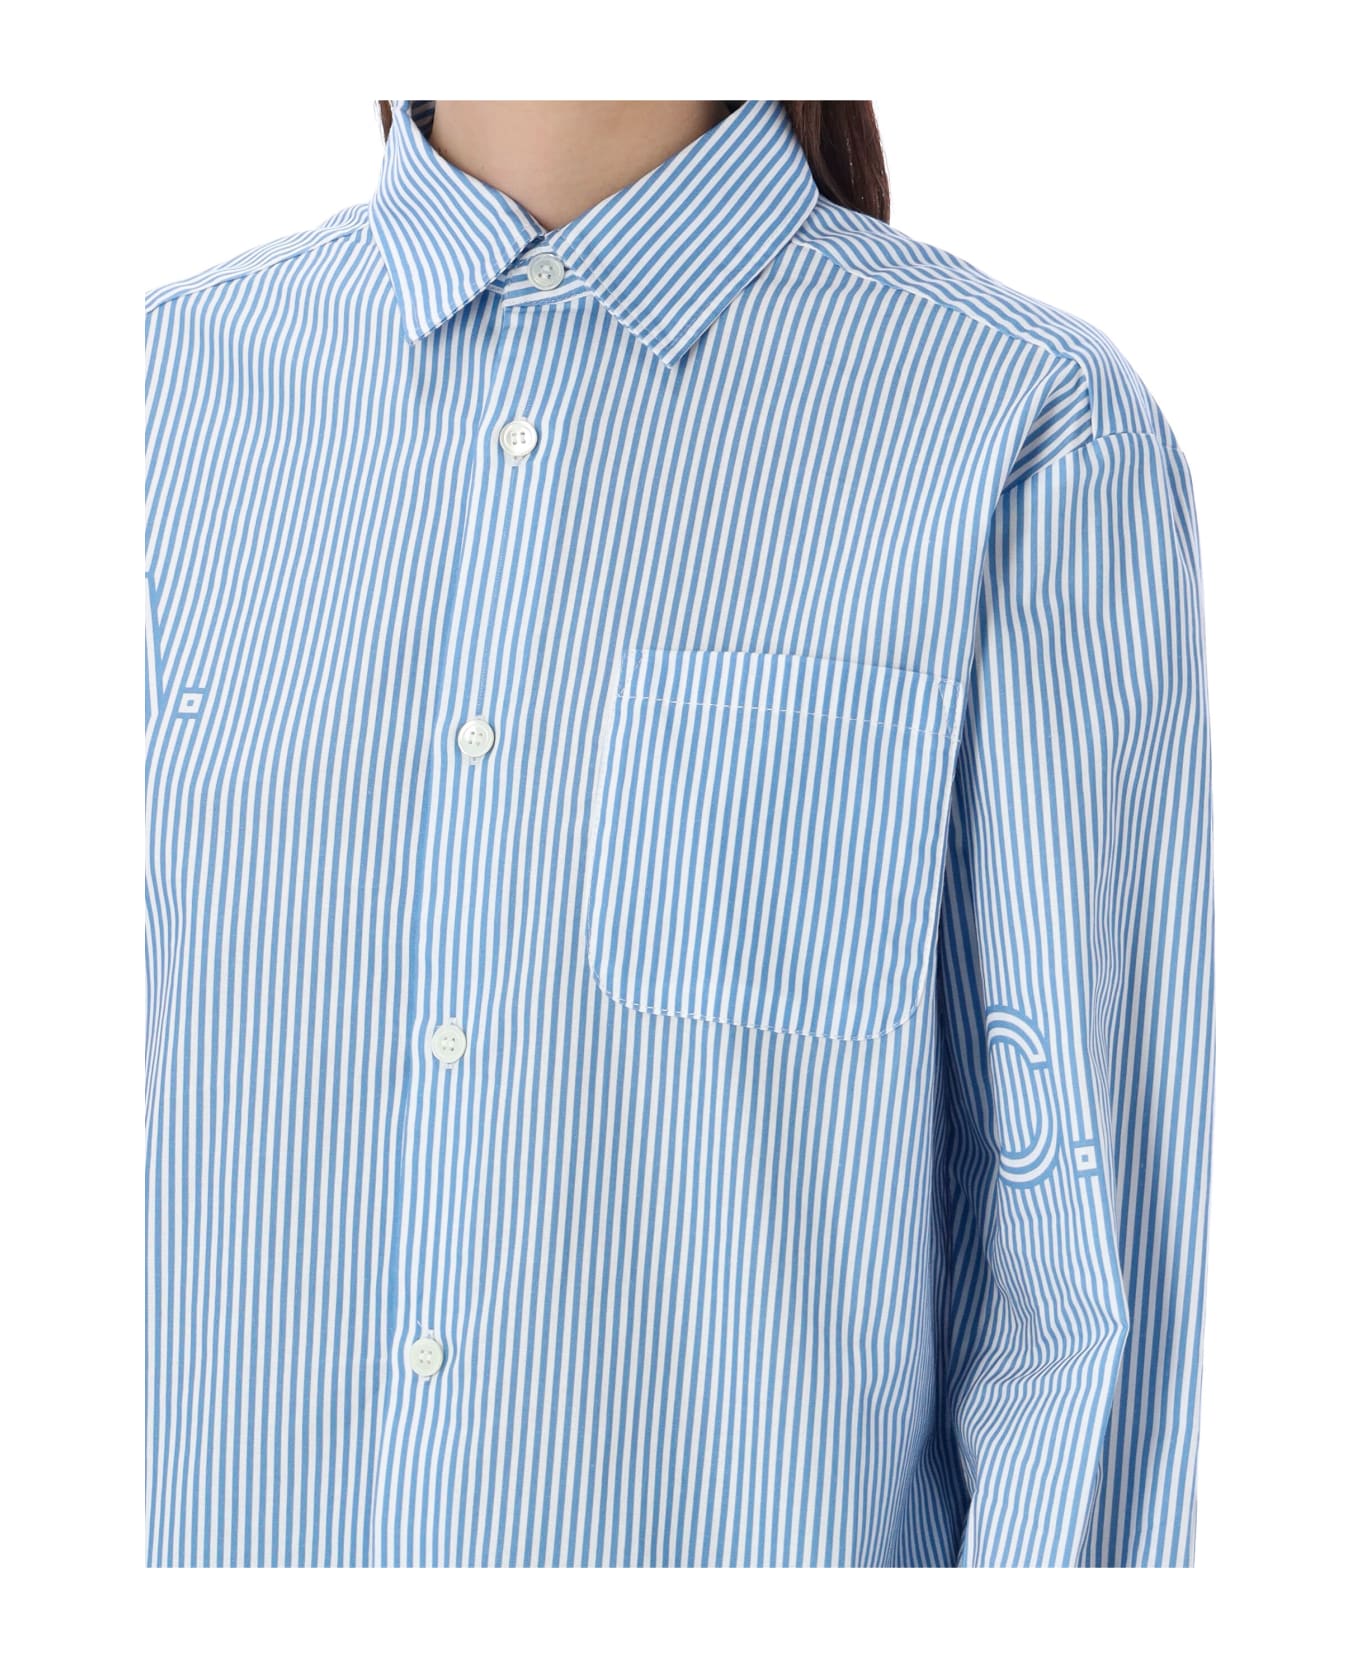 A.P.C. Sela Shirt Stripes - BLUE STRIPE シャツ